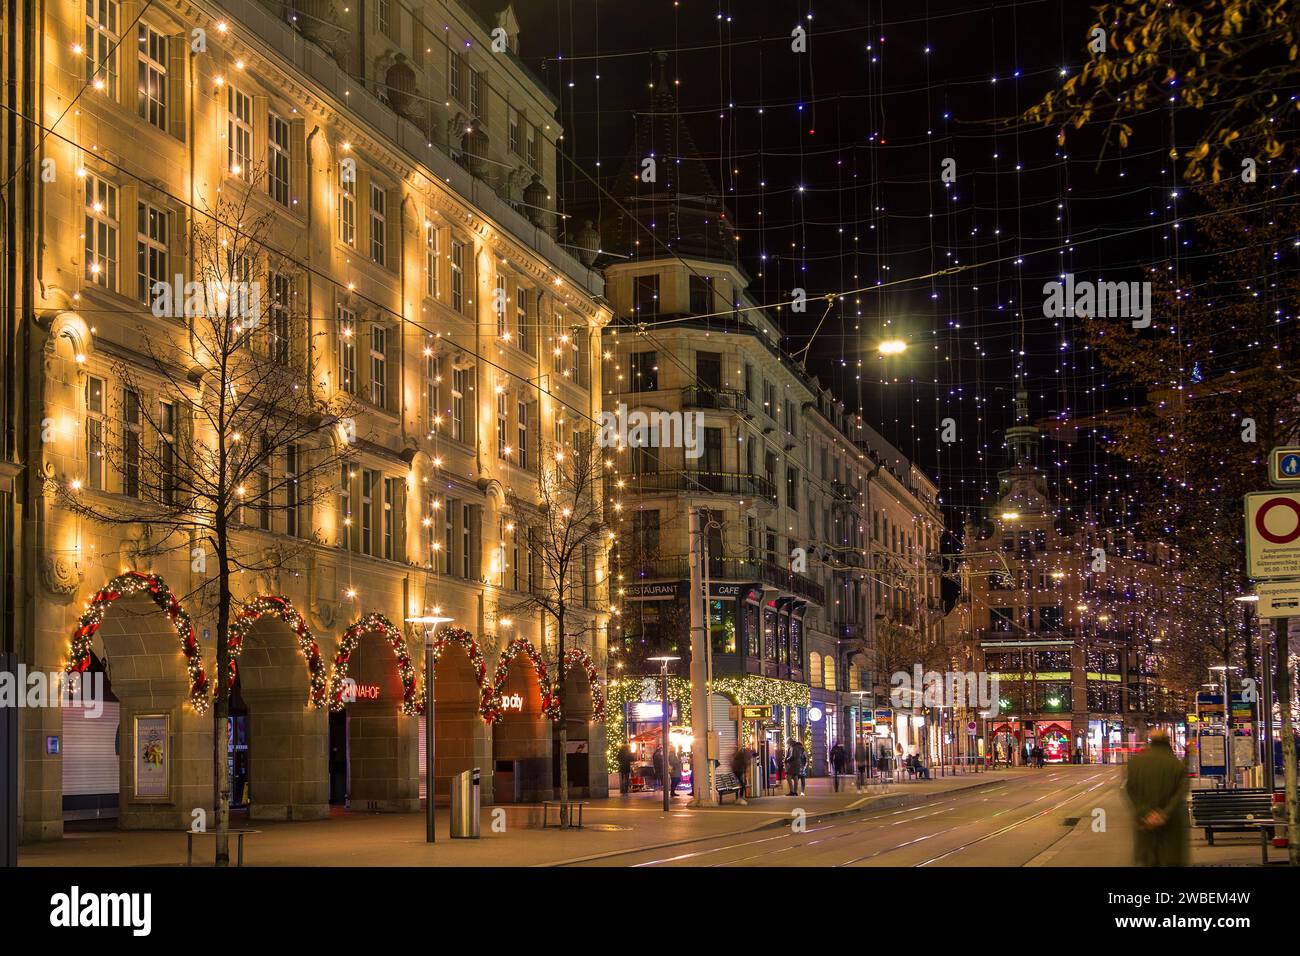 Zruich, Suiza - 02 de enero de 2022: Calle Bahnhof en el centro de la ciudad de Zurich en la temporada de Navidad con iluminación del festival. Foto de stock